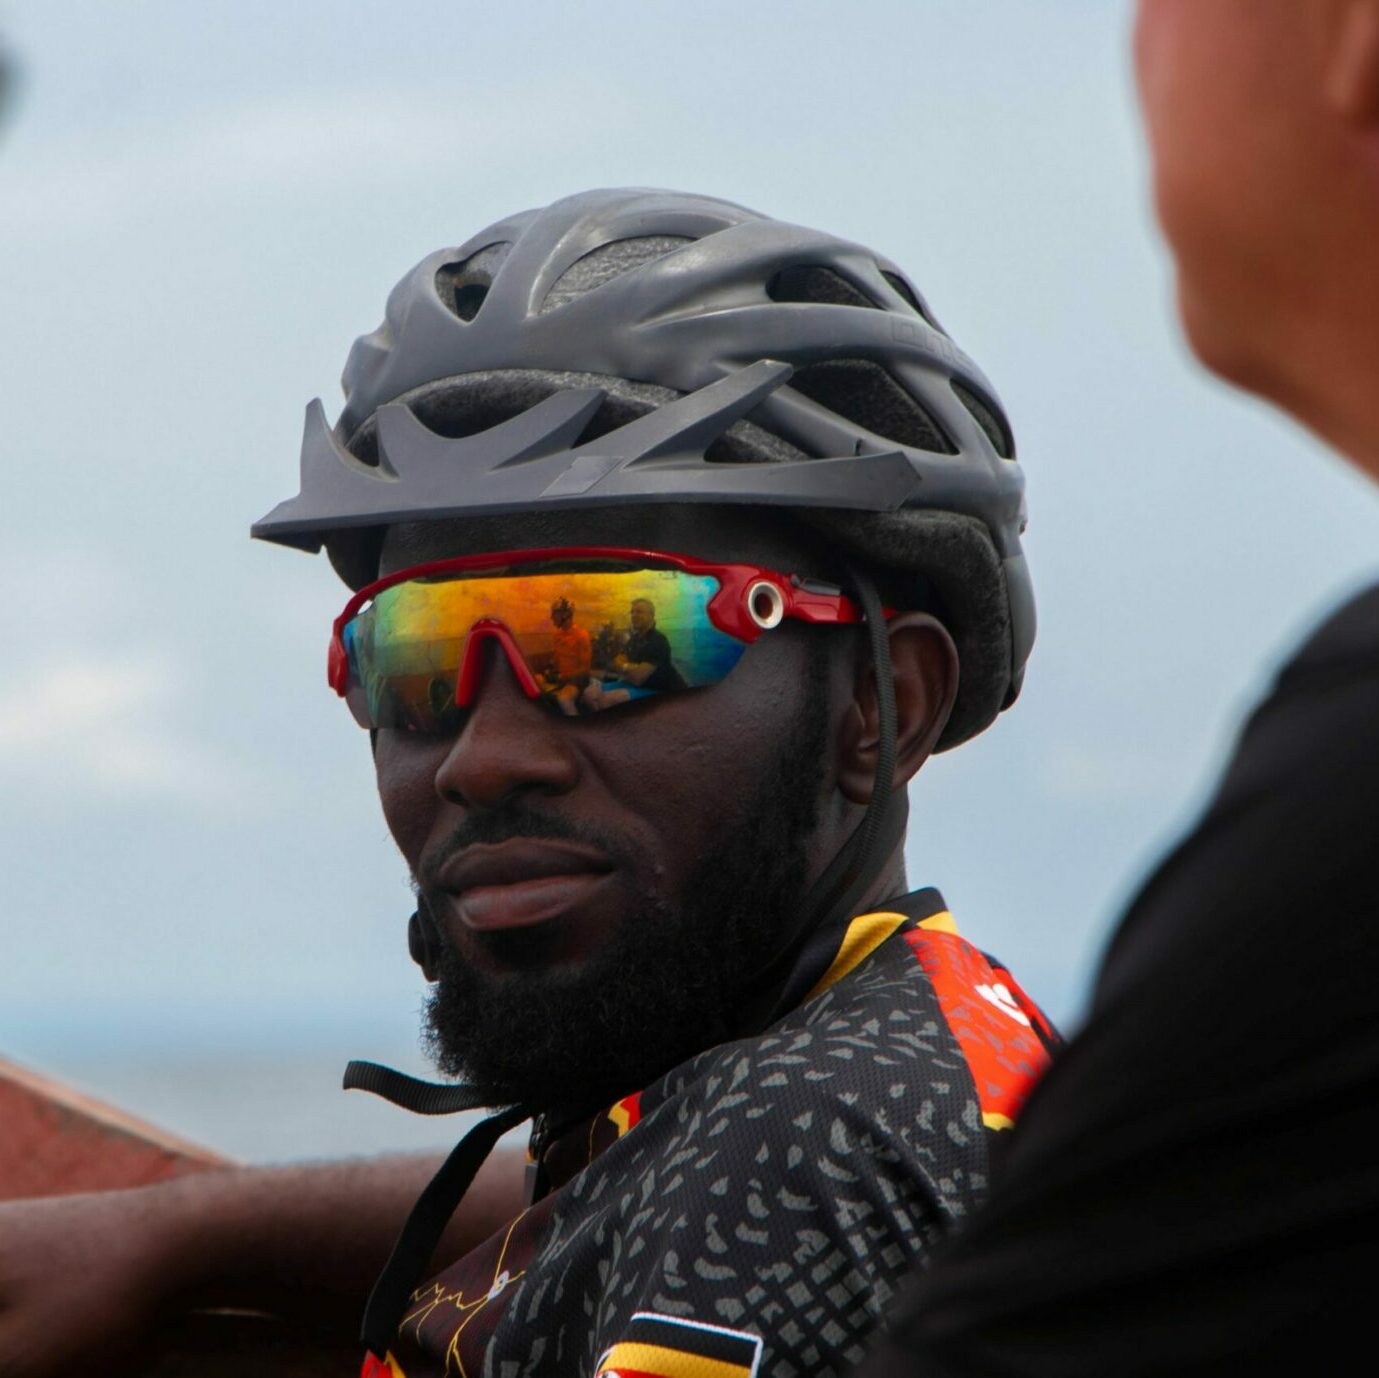 Zaga cycling guide bicycle tours Africa Uganda